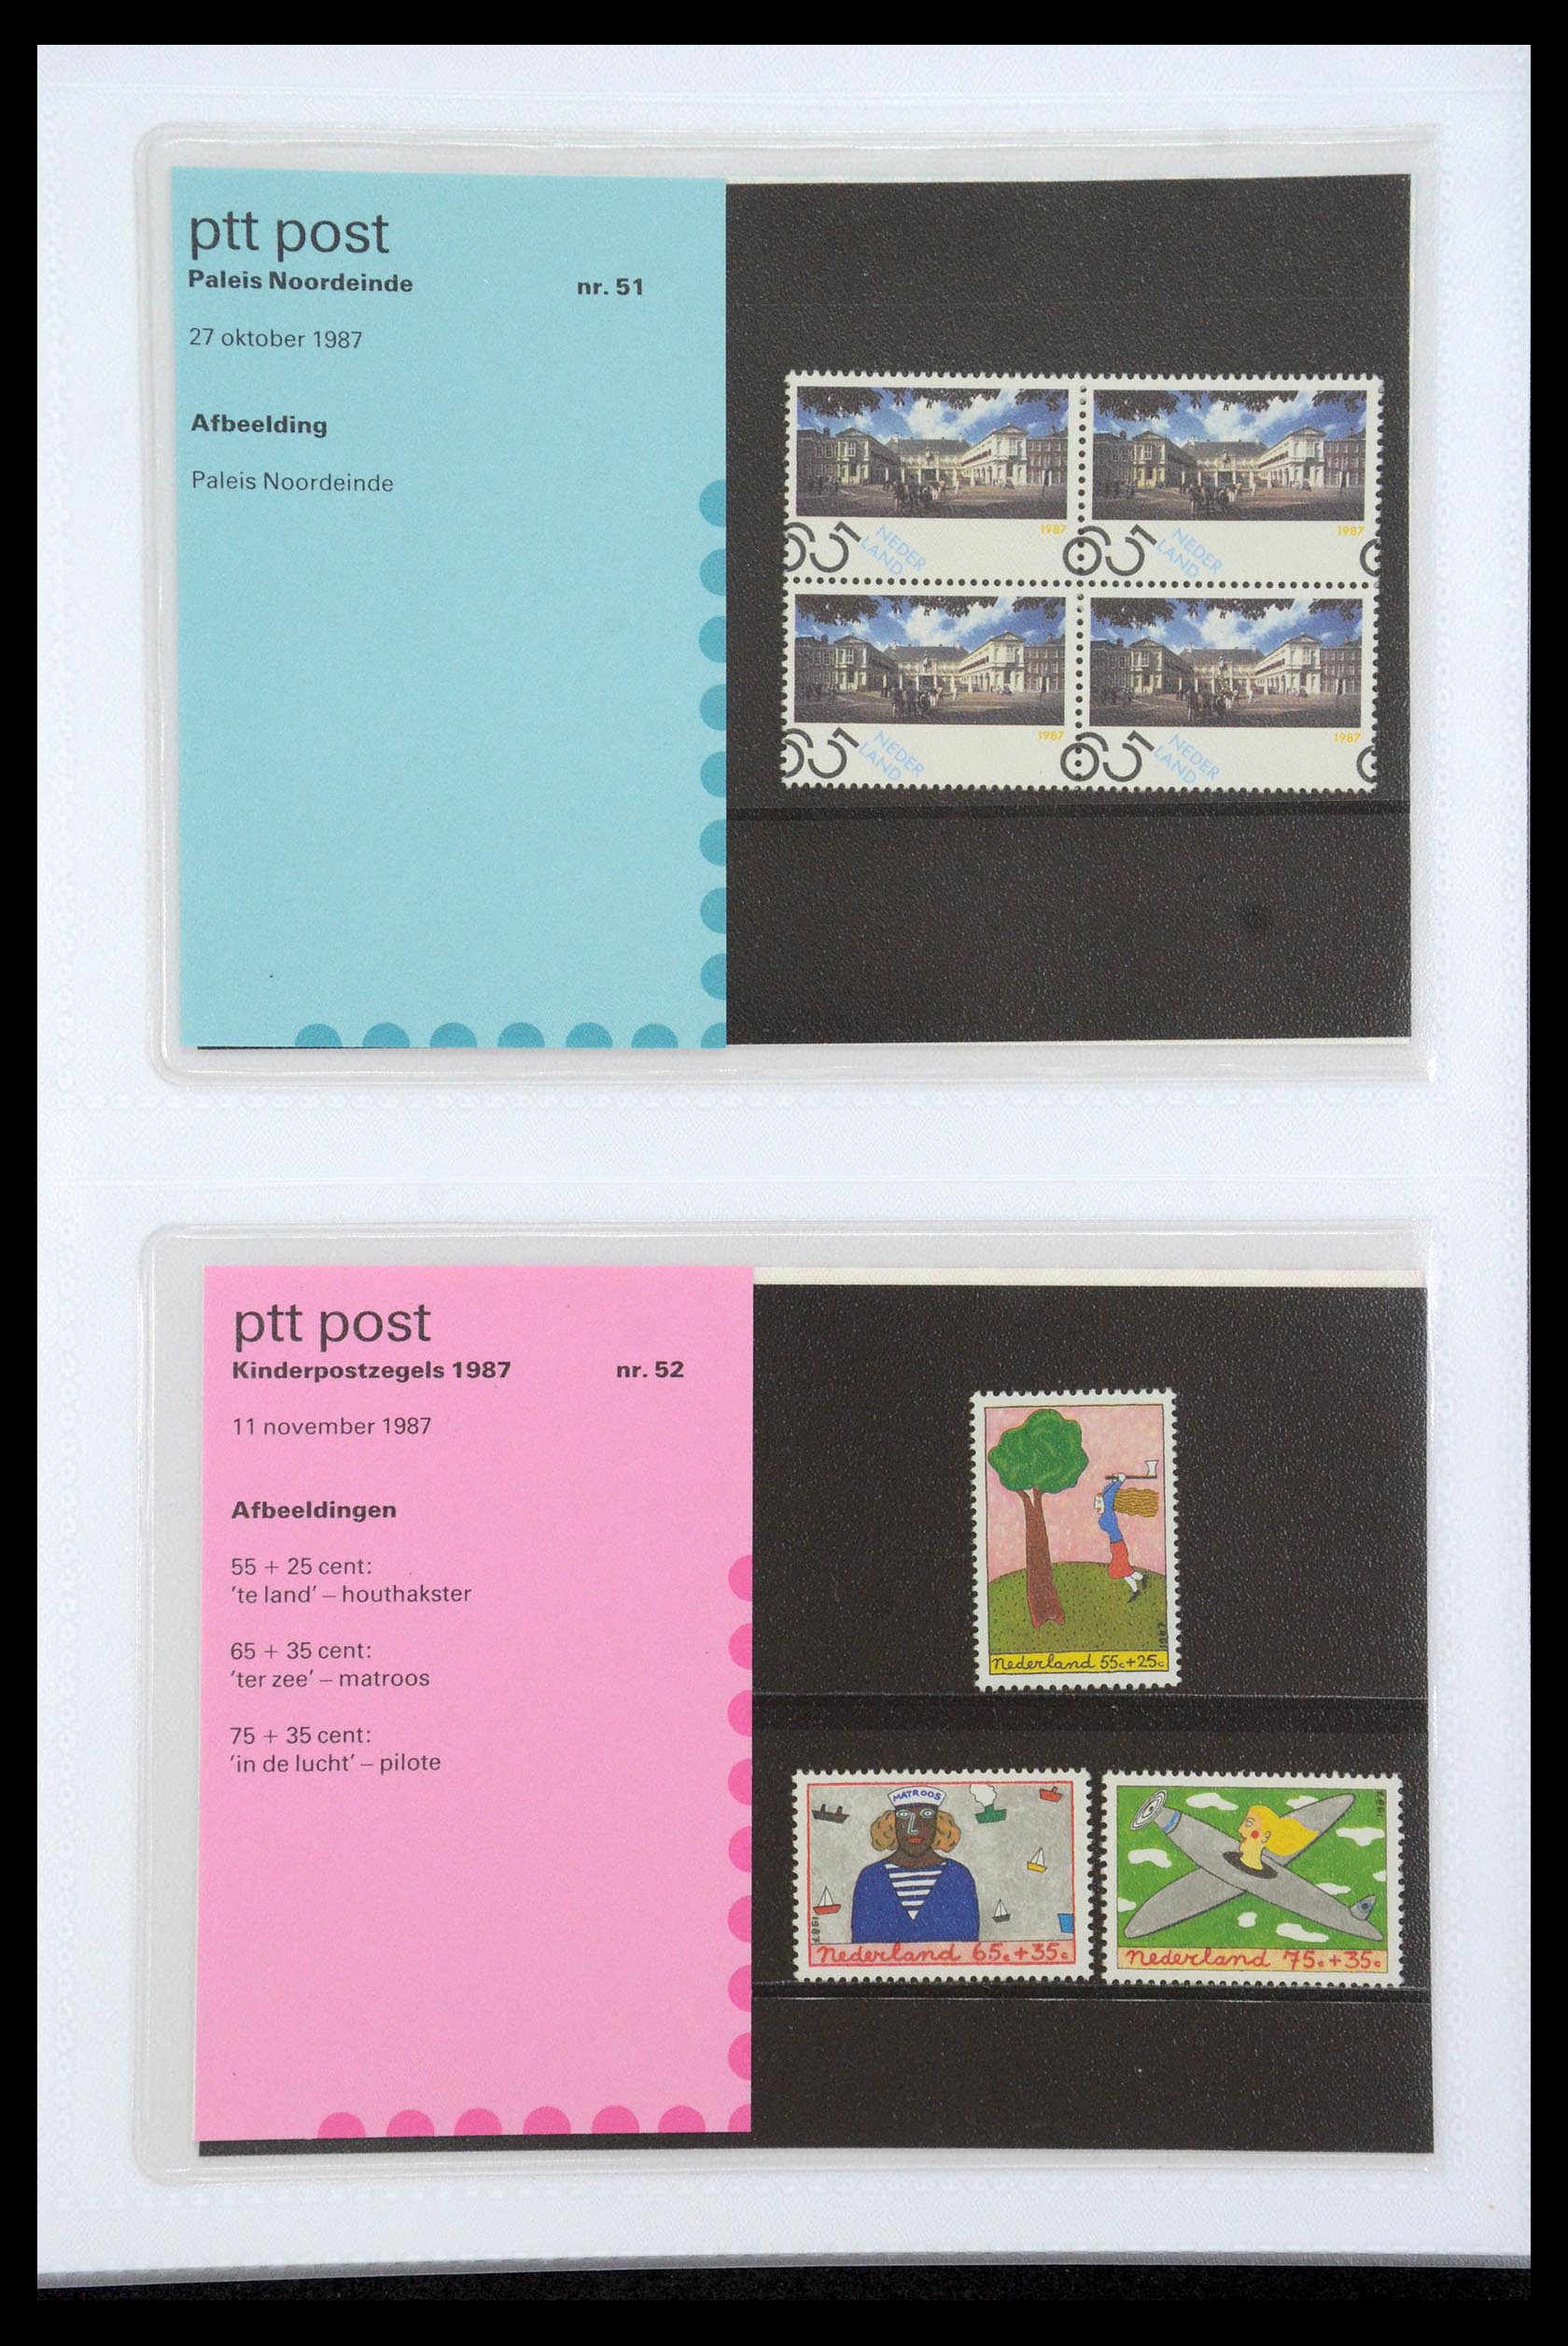 35947 026 - Stamp Collection 35947 Netherlands PTT presentation packs 1982-2019!